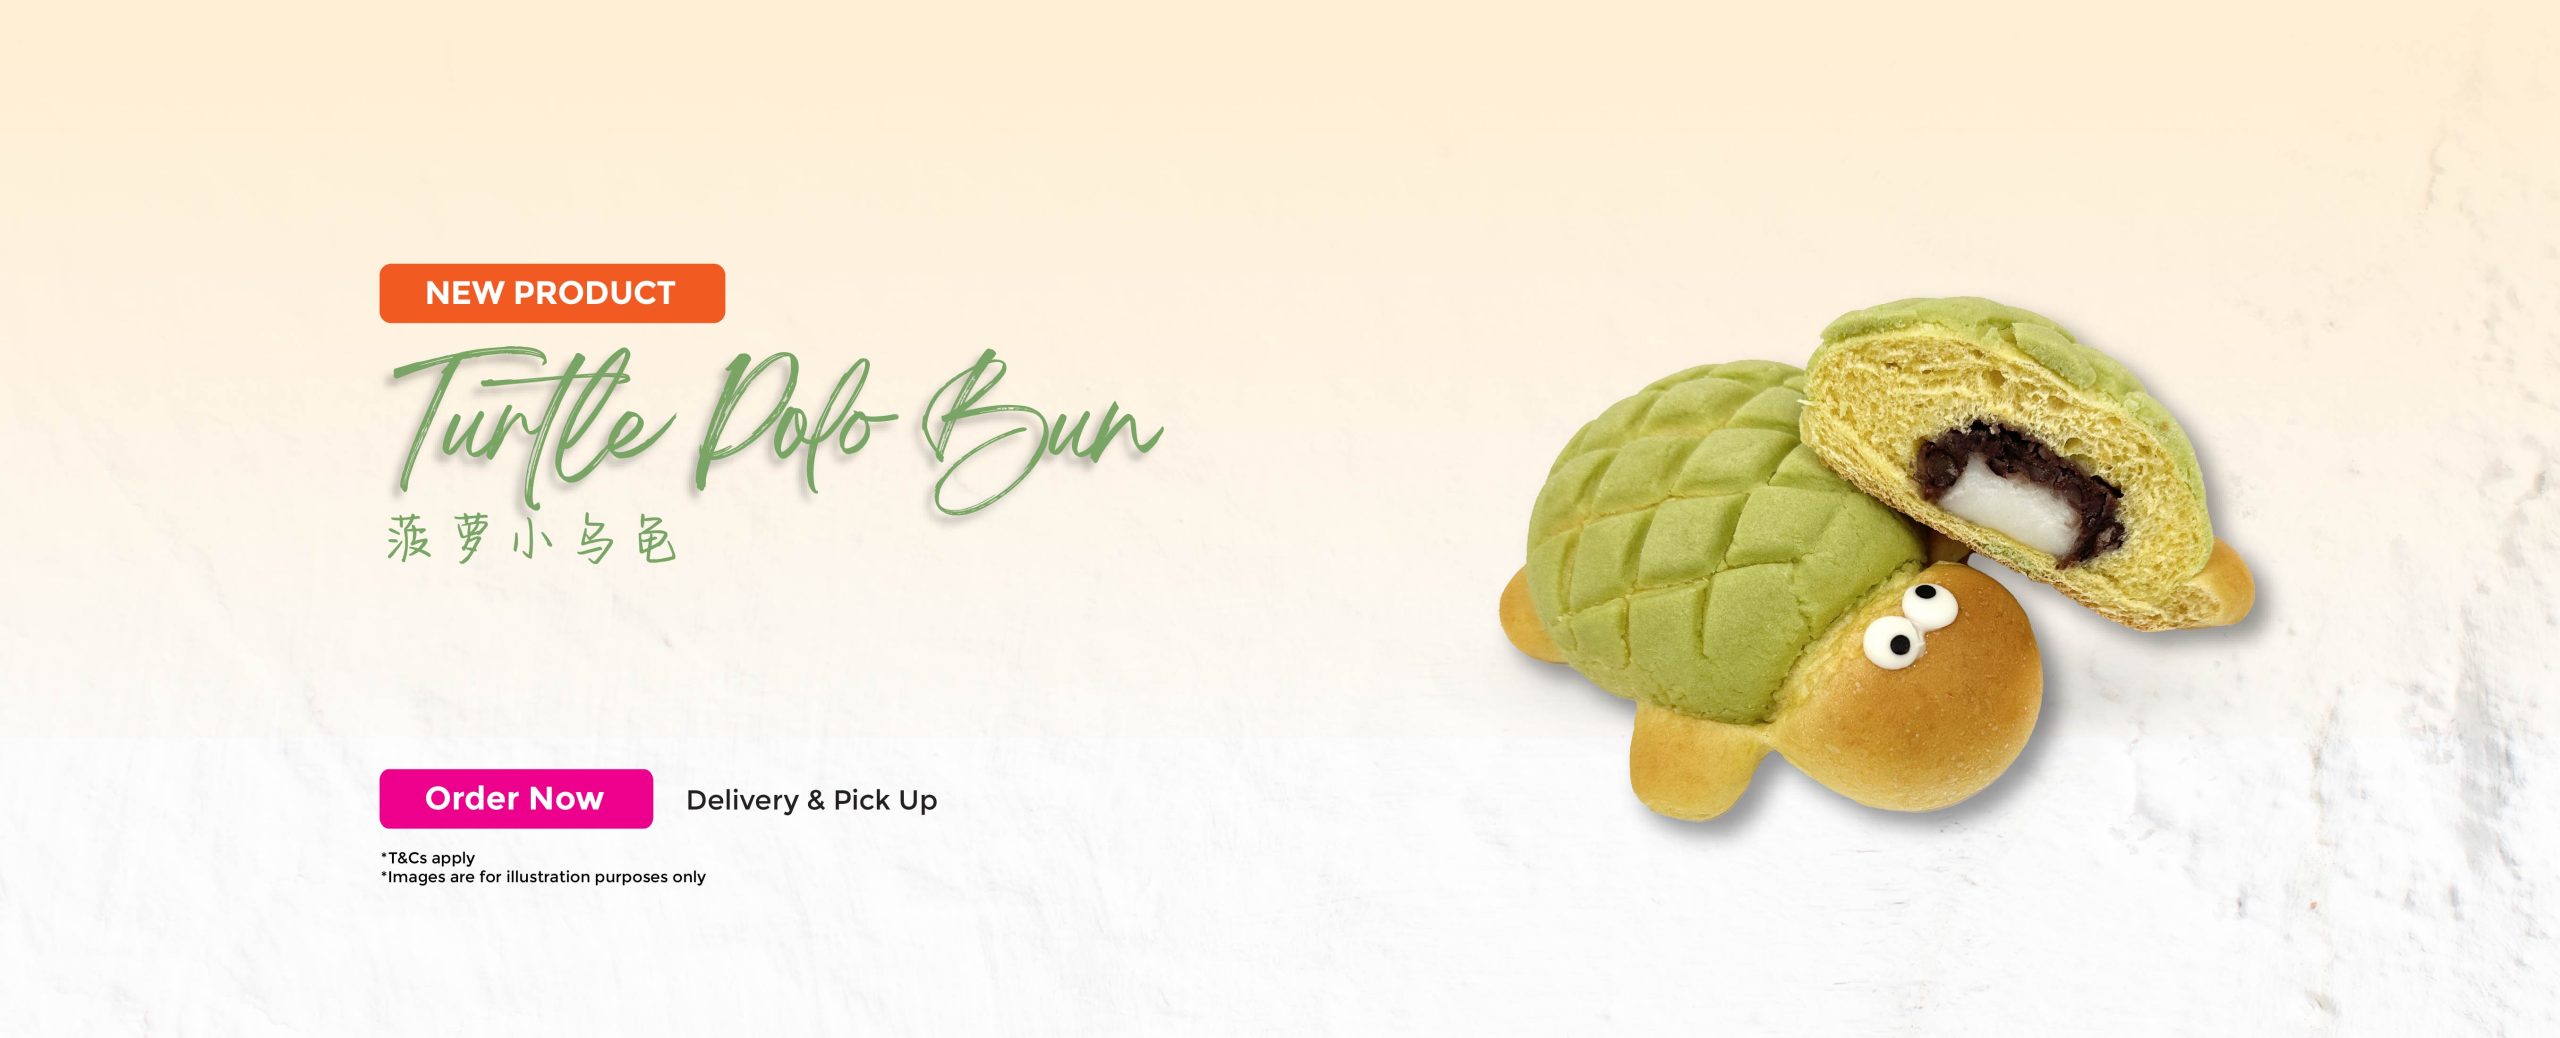 Turtle Polo Bun web banner-01